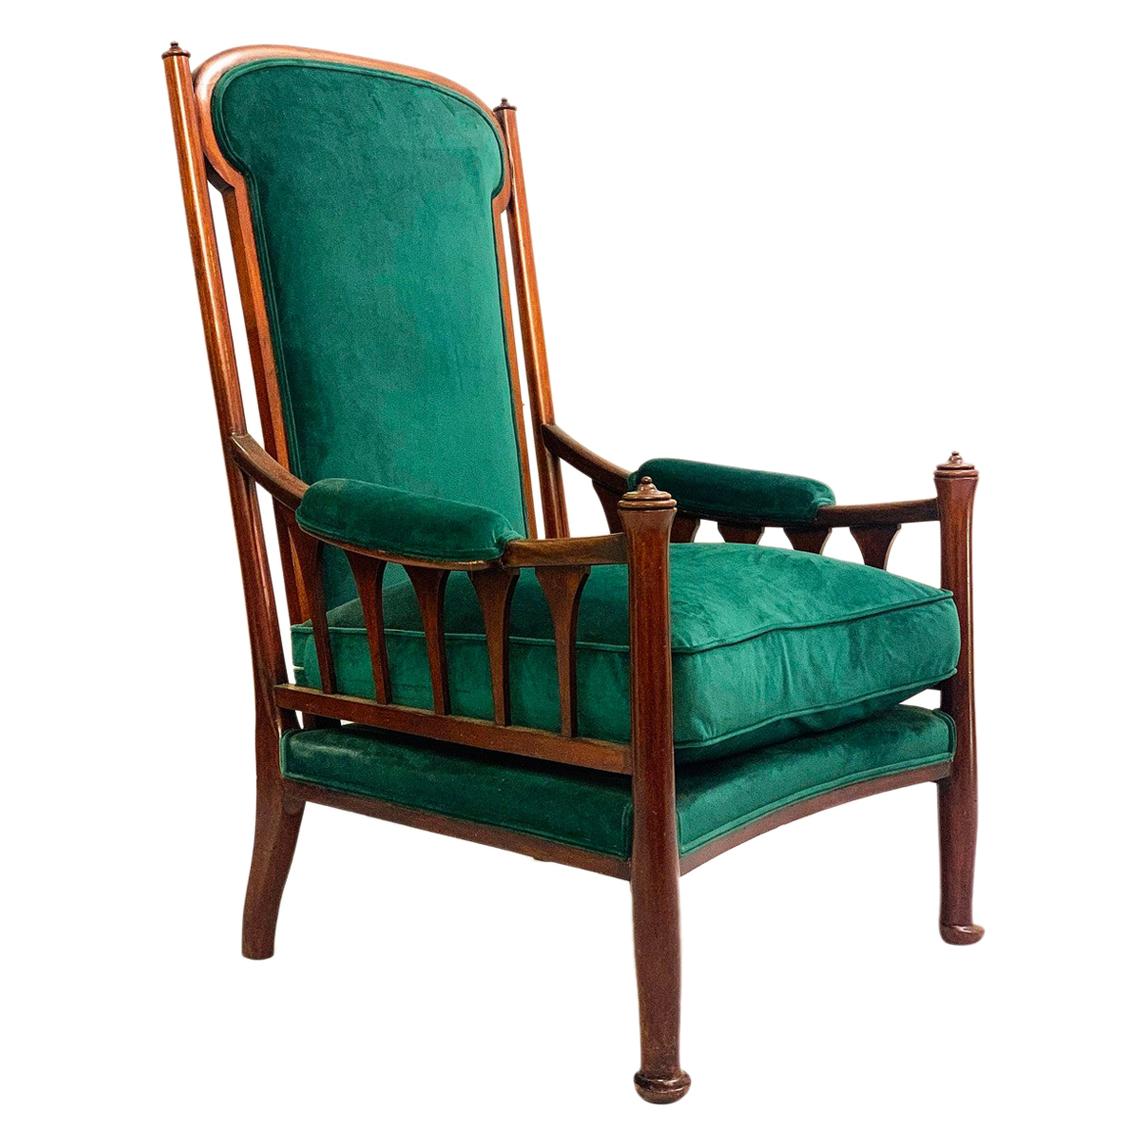 Englischer Art nouveau-Sessel, neu, grüne Samtpolsterung